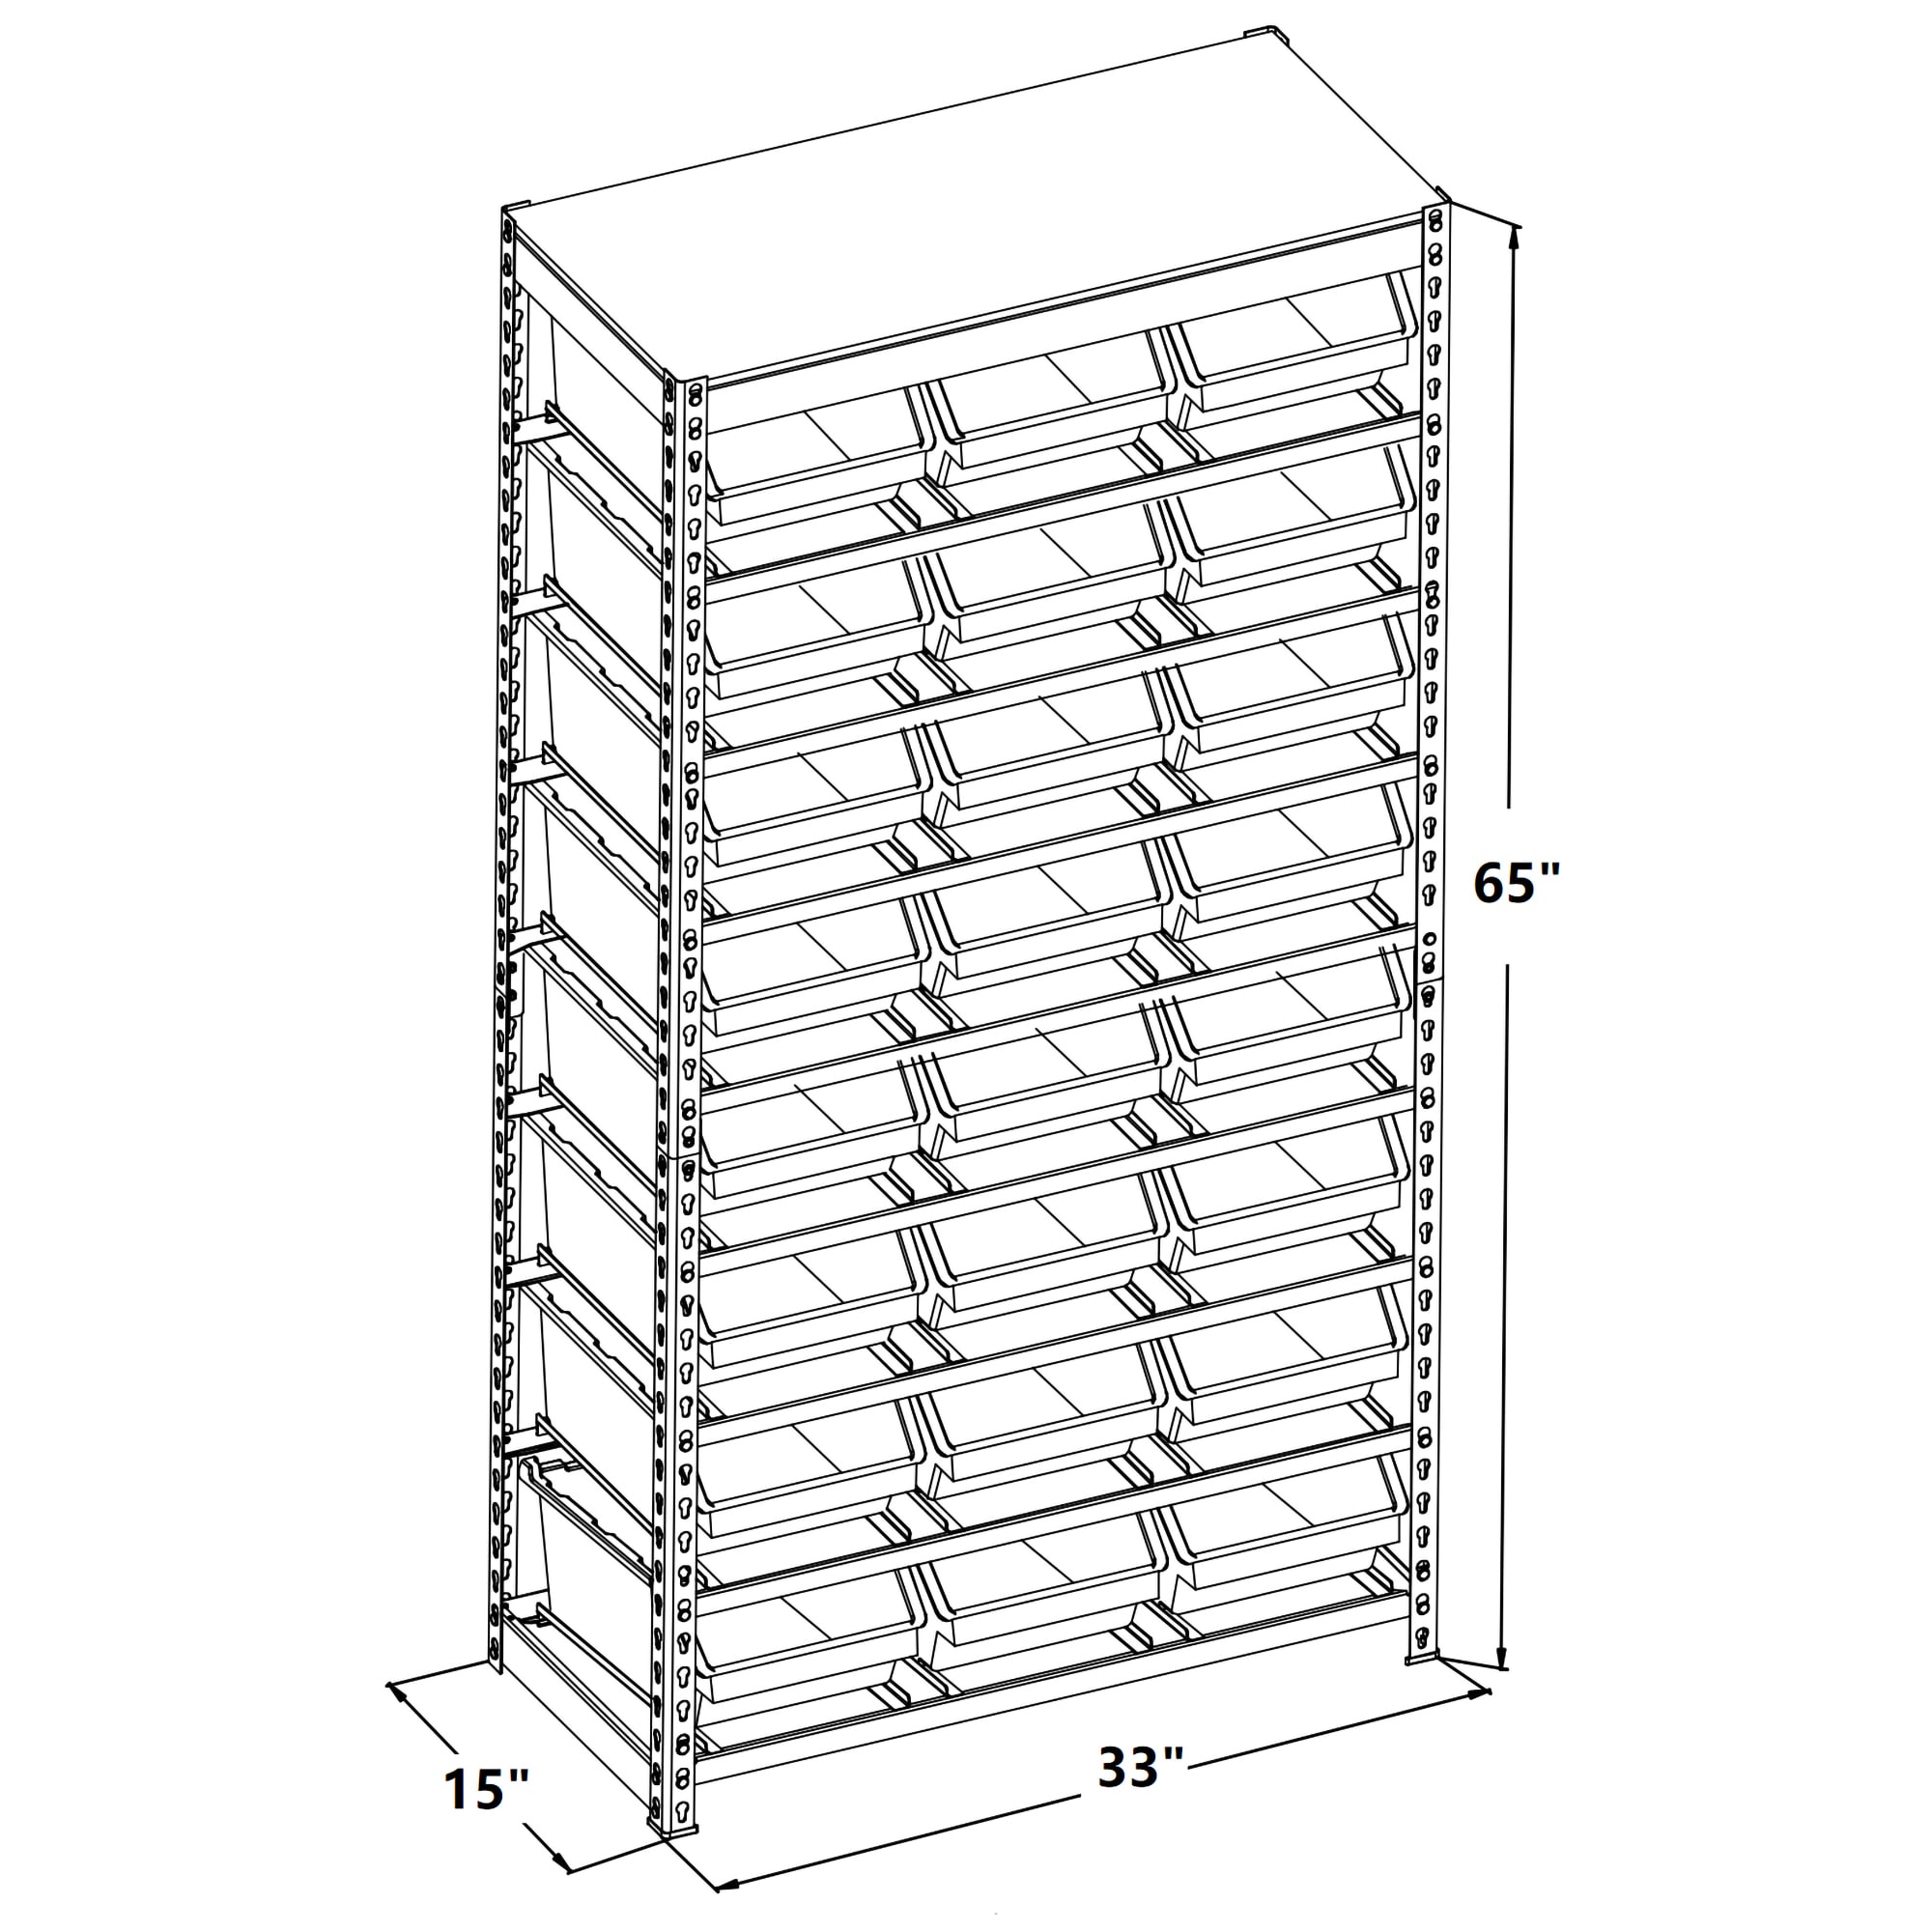 King's Rack Bin Rack Storage System Heavy Duty Steel Rack Organizer Shelving Unit w/ 16 Plastic Bins in 6 Tiers, Gray GT0939